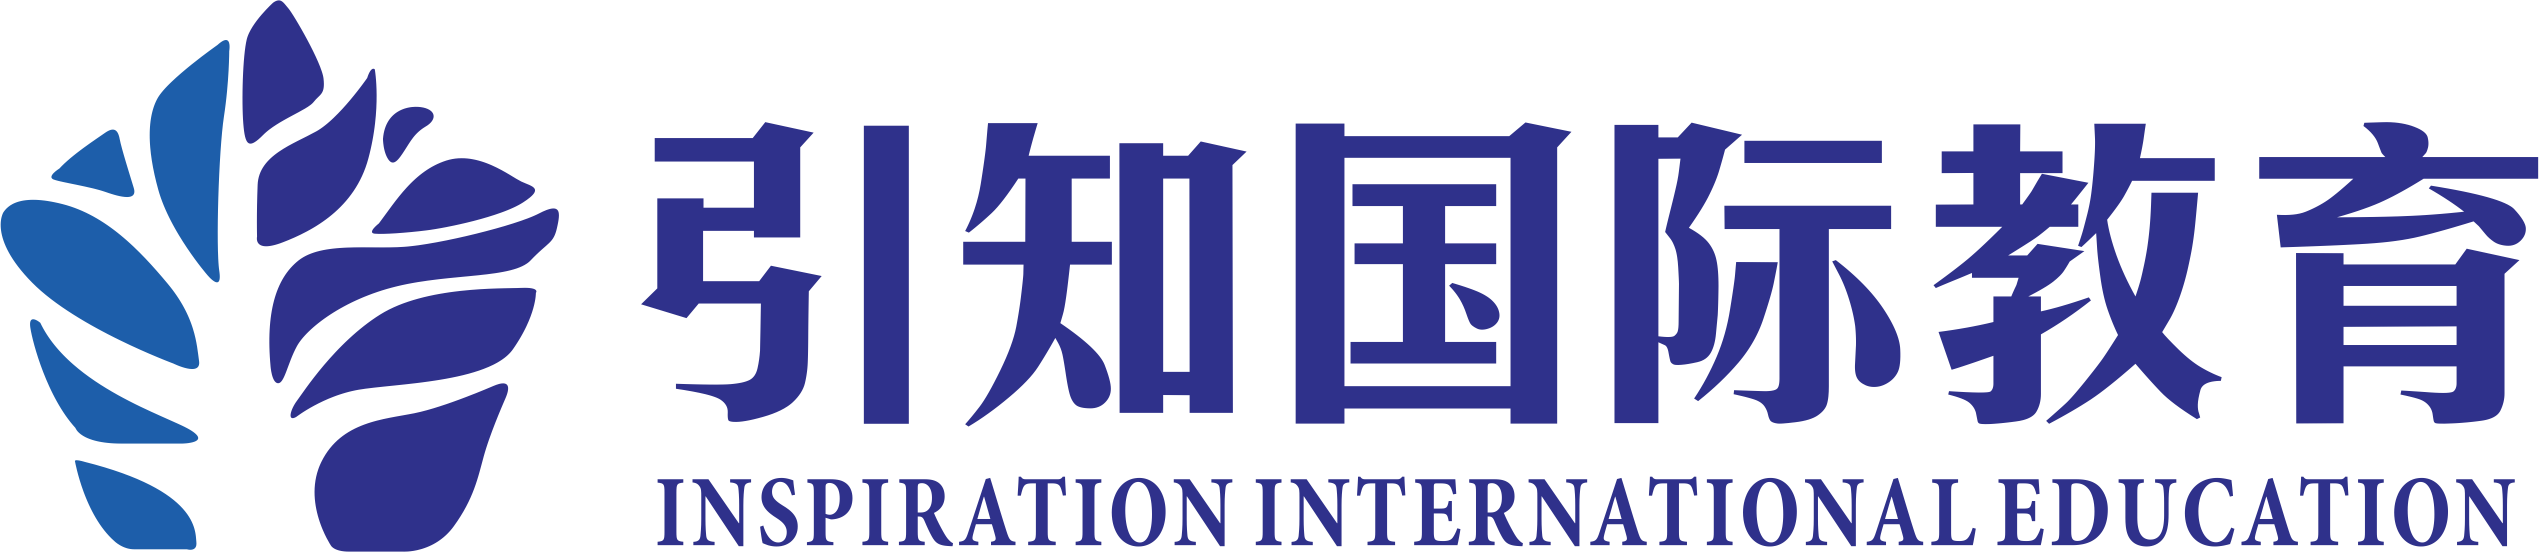 北京引知国际教育科技有限公司